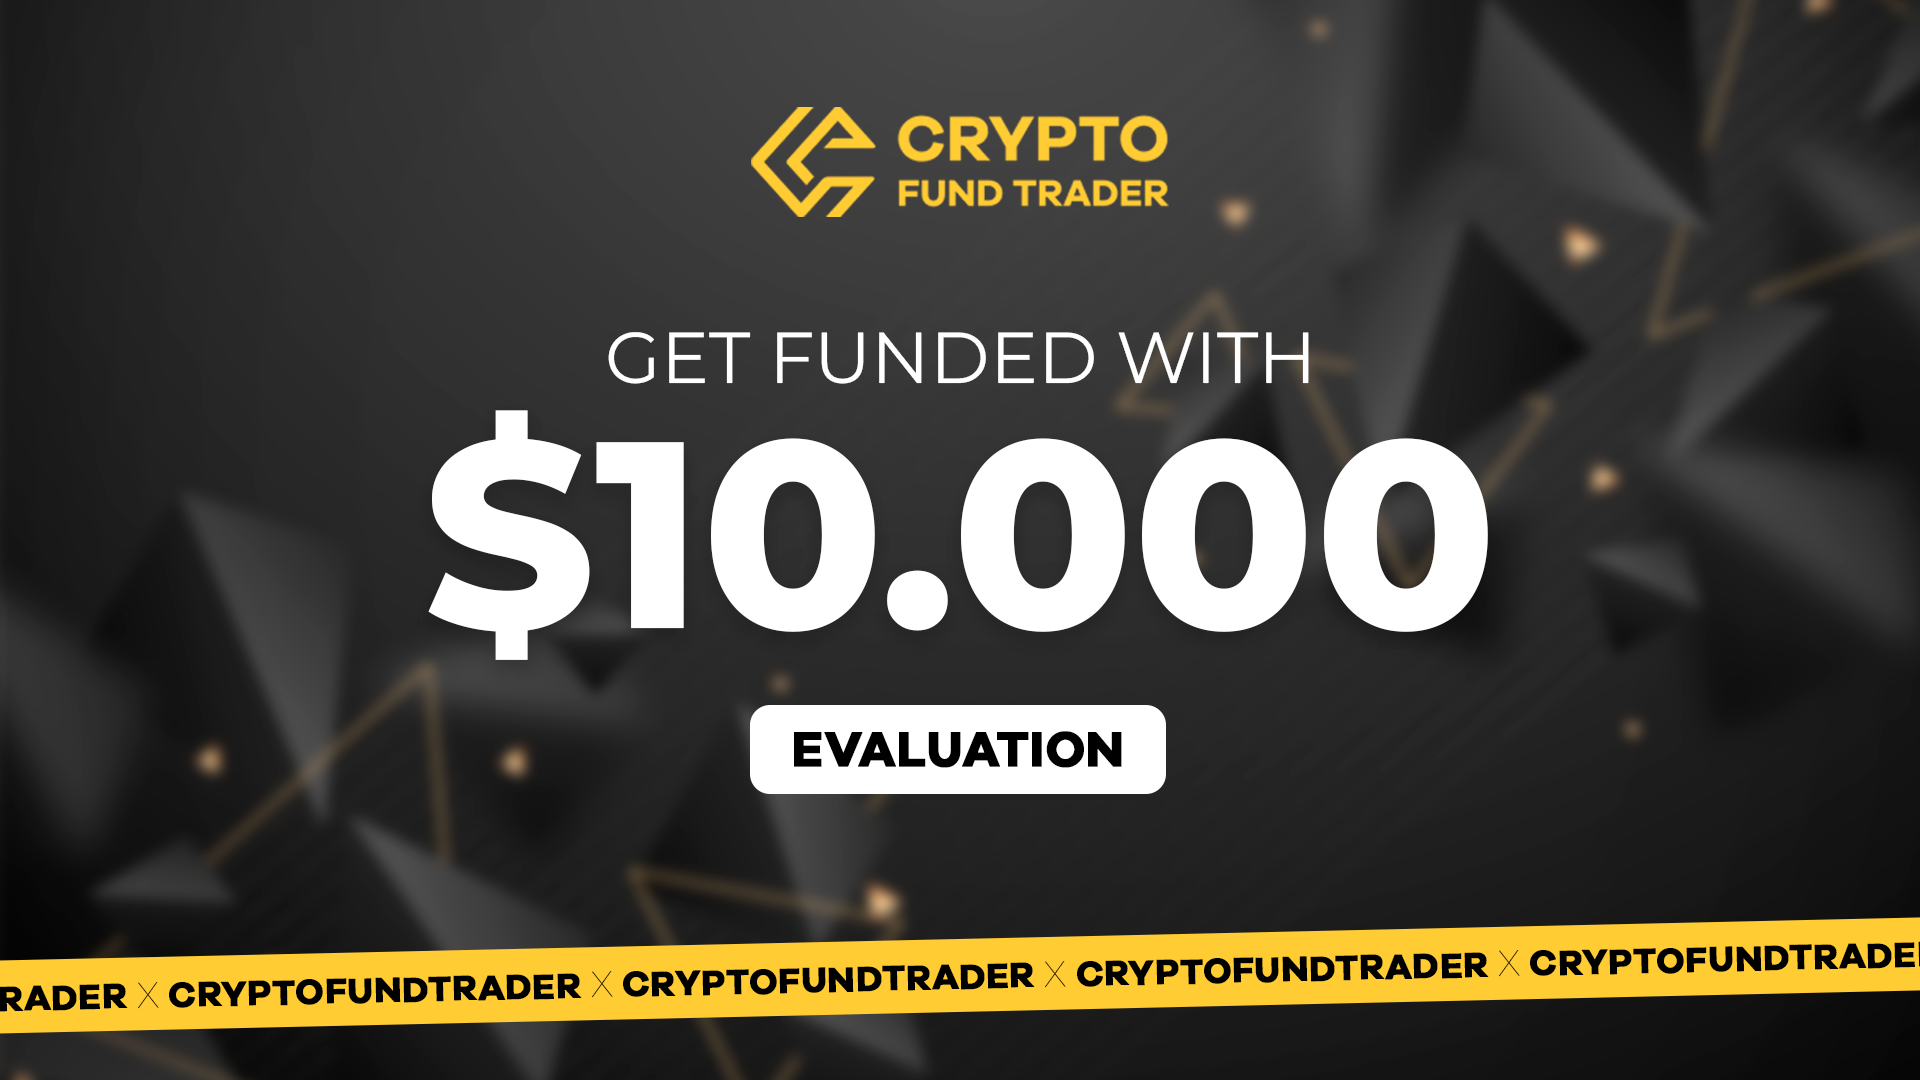 Crypto Fund Trader - $10.000 Evaluation Voucher 96.05$